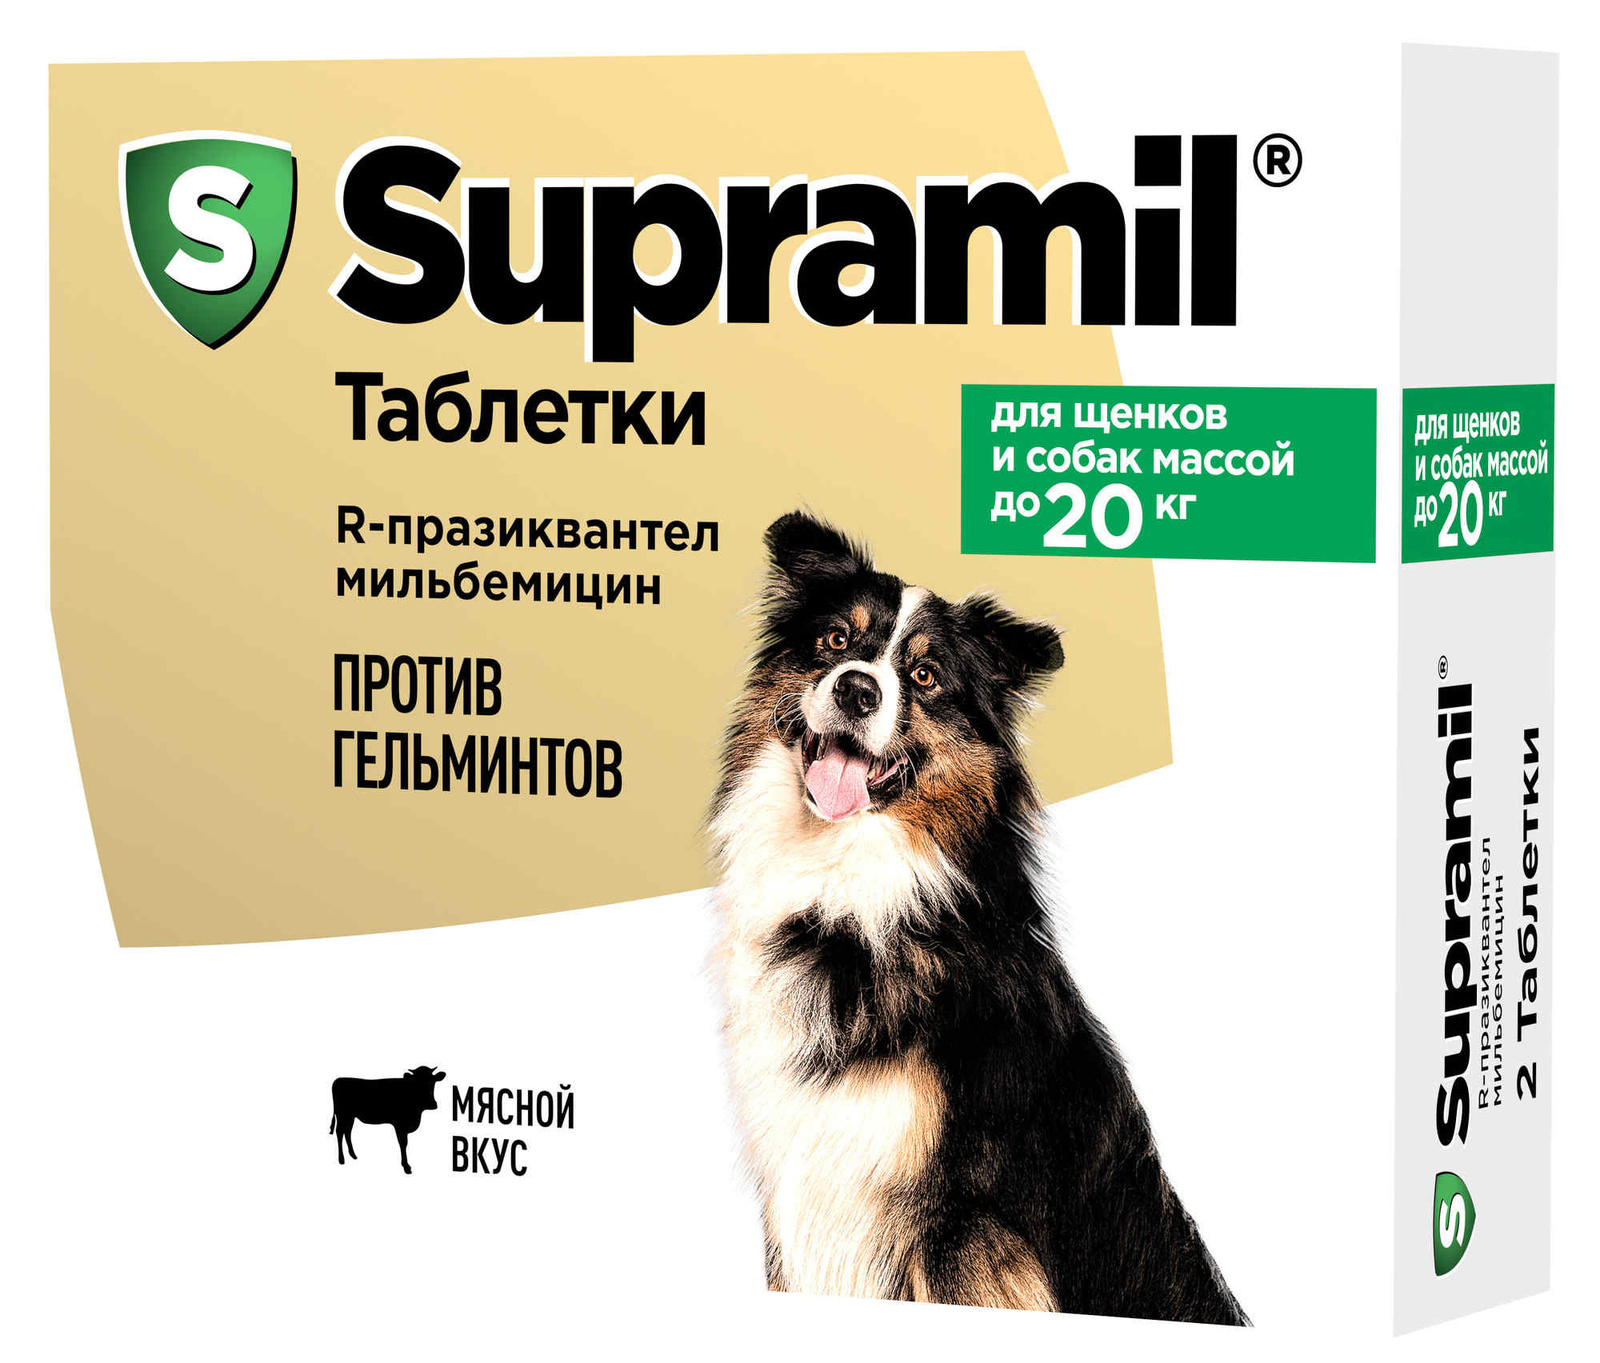 Астрафарм Астрафарм антигельминтный препарат Supramil для щенков и собак массой до 20 кг, таблетки (2 таб.) онсиор тм таблетки д собак 10 20 кг 20 мг 28 таб